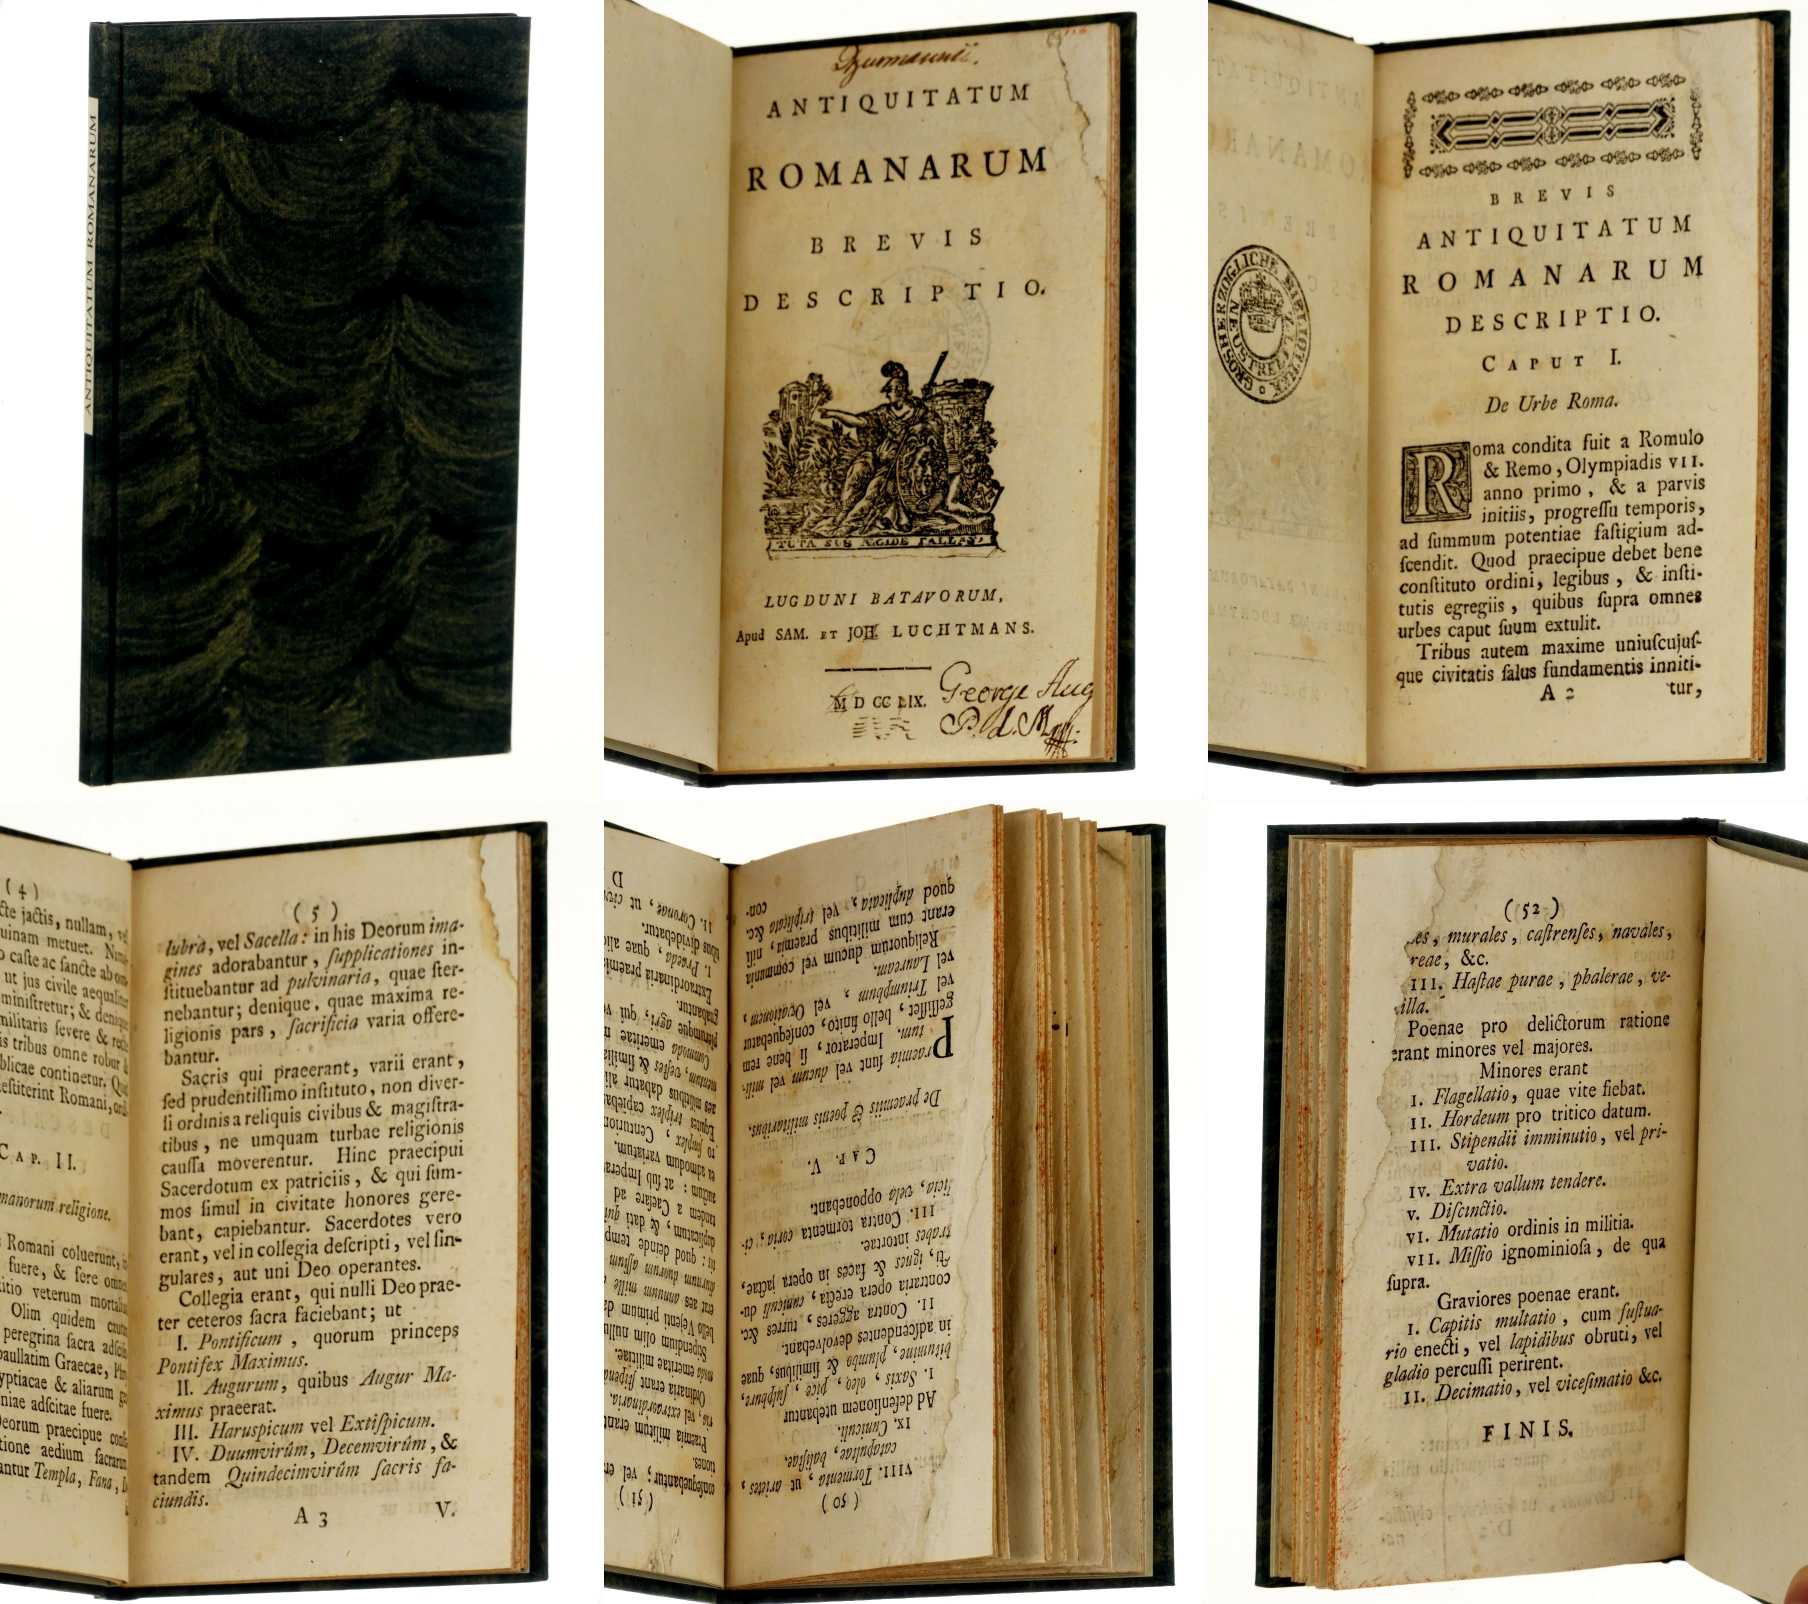   Antiquitatum Romanarum brevis descriptio. [Pieter Burman]. 